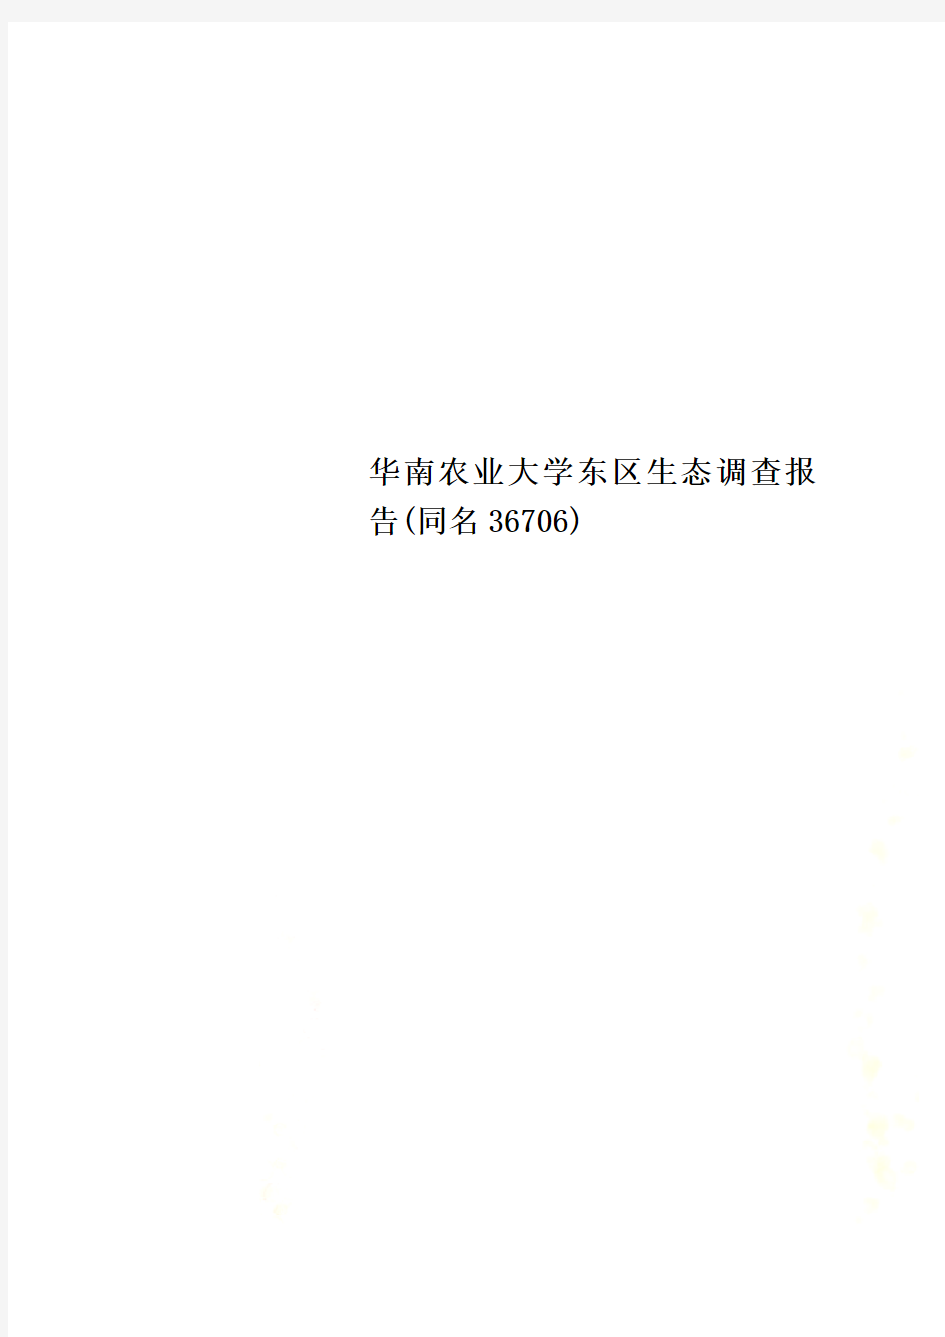 华南农业大学东区生态调查报告(同名36706)